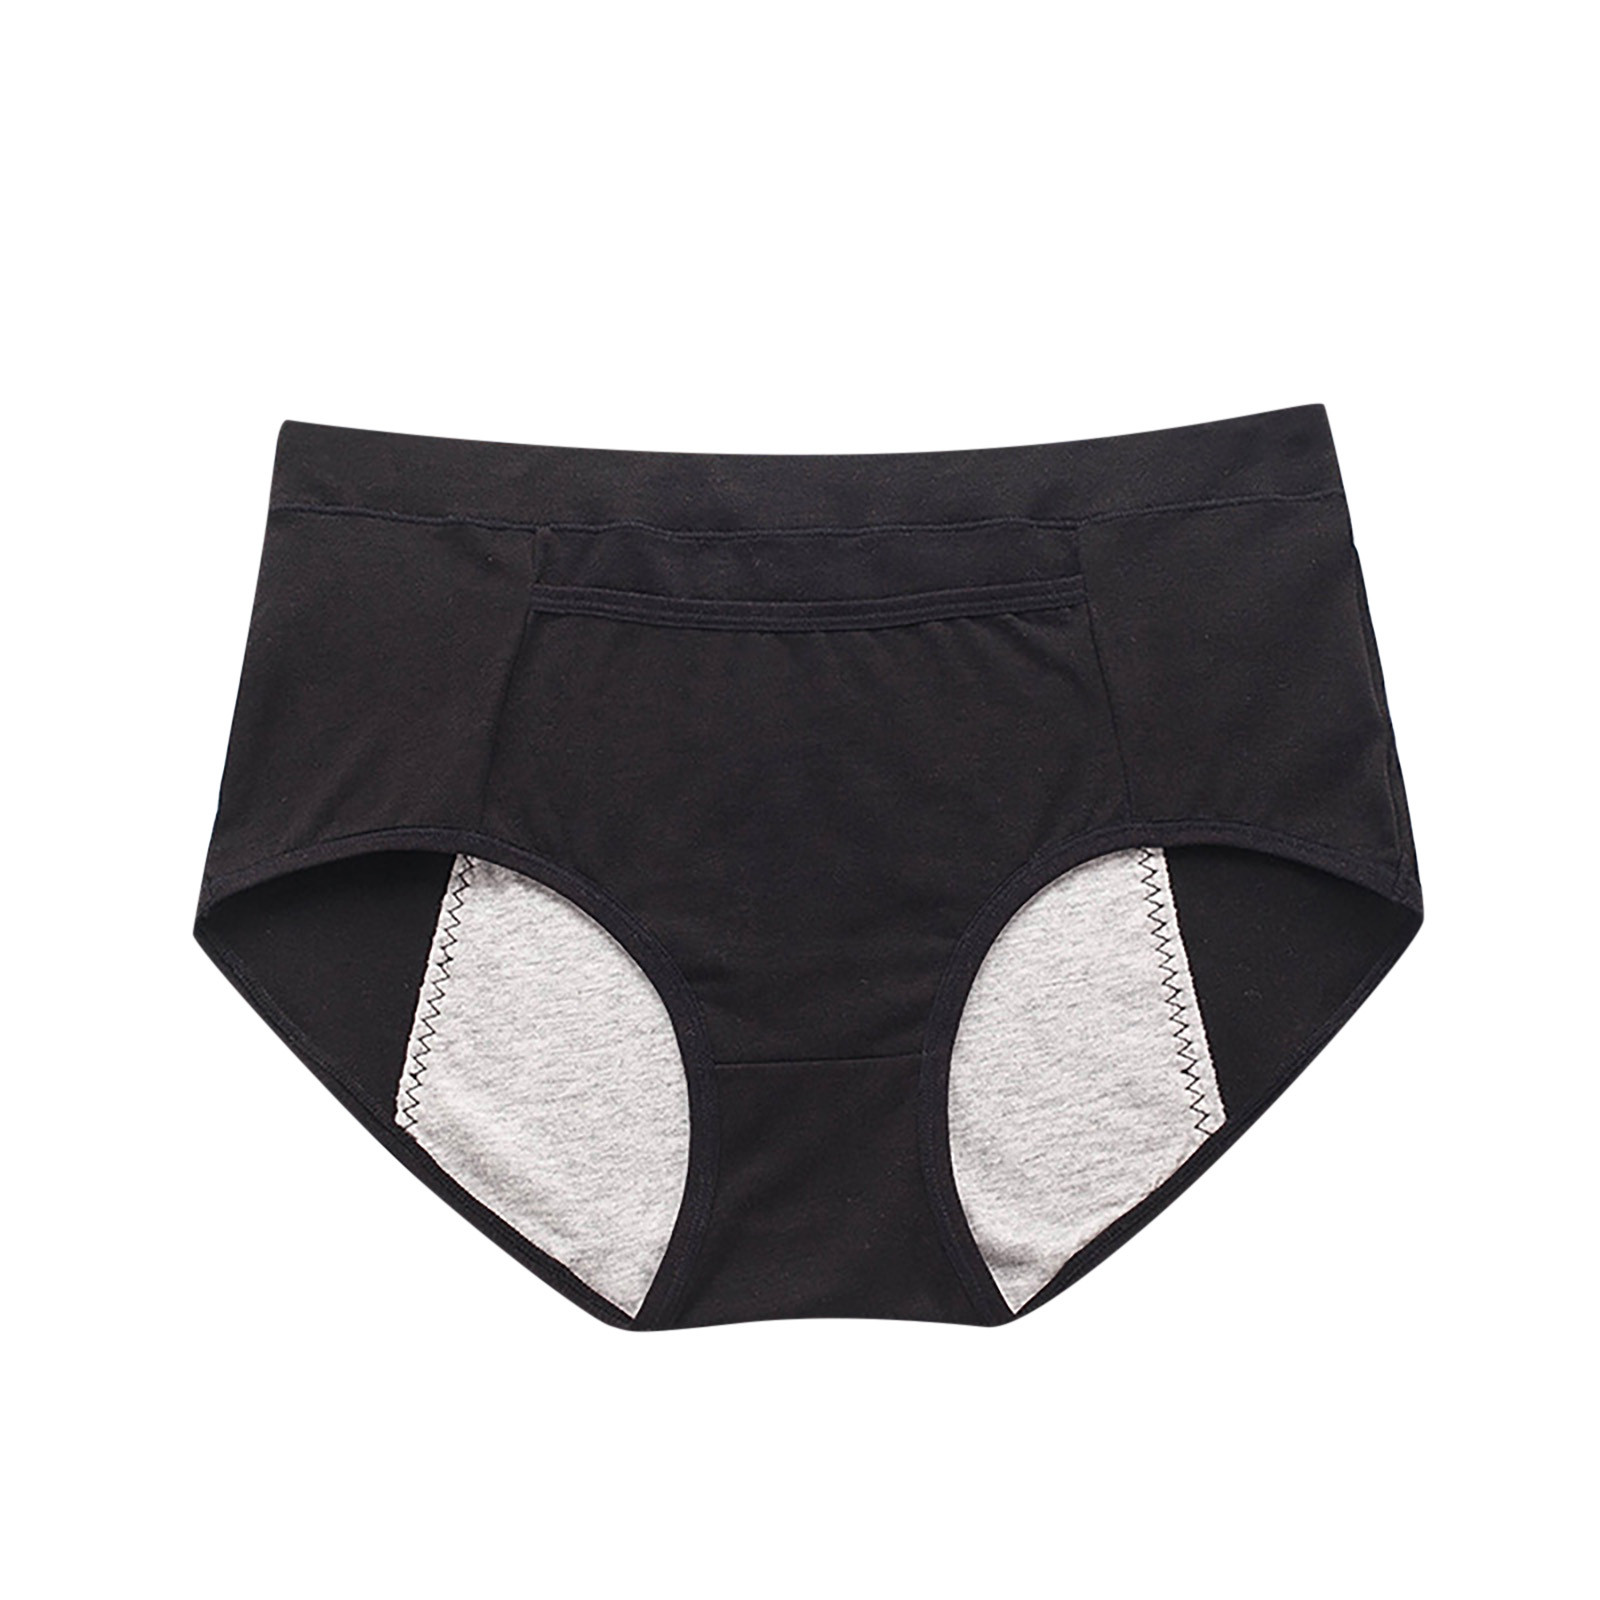 Ichuanyi Women's Large Underwear Medium High Waist Middle-Aged Underwear - image 2 of 3